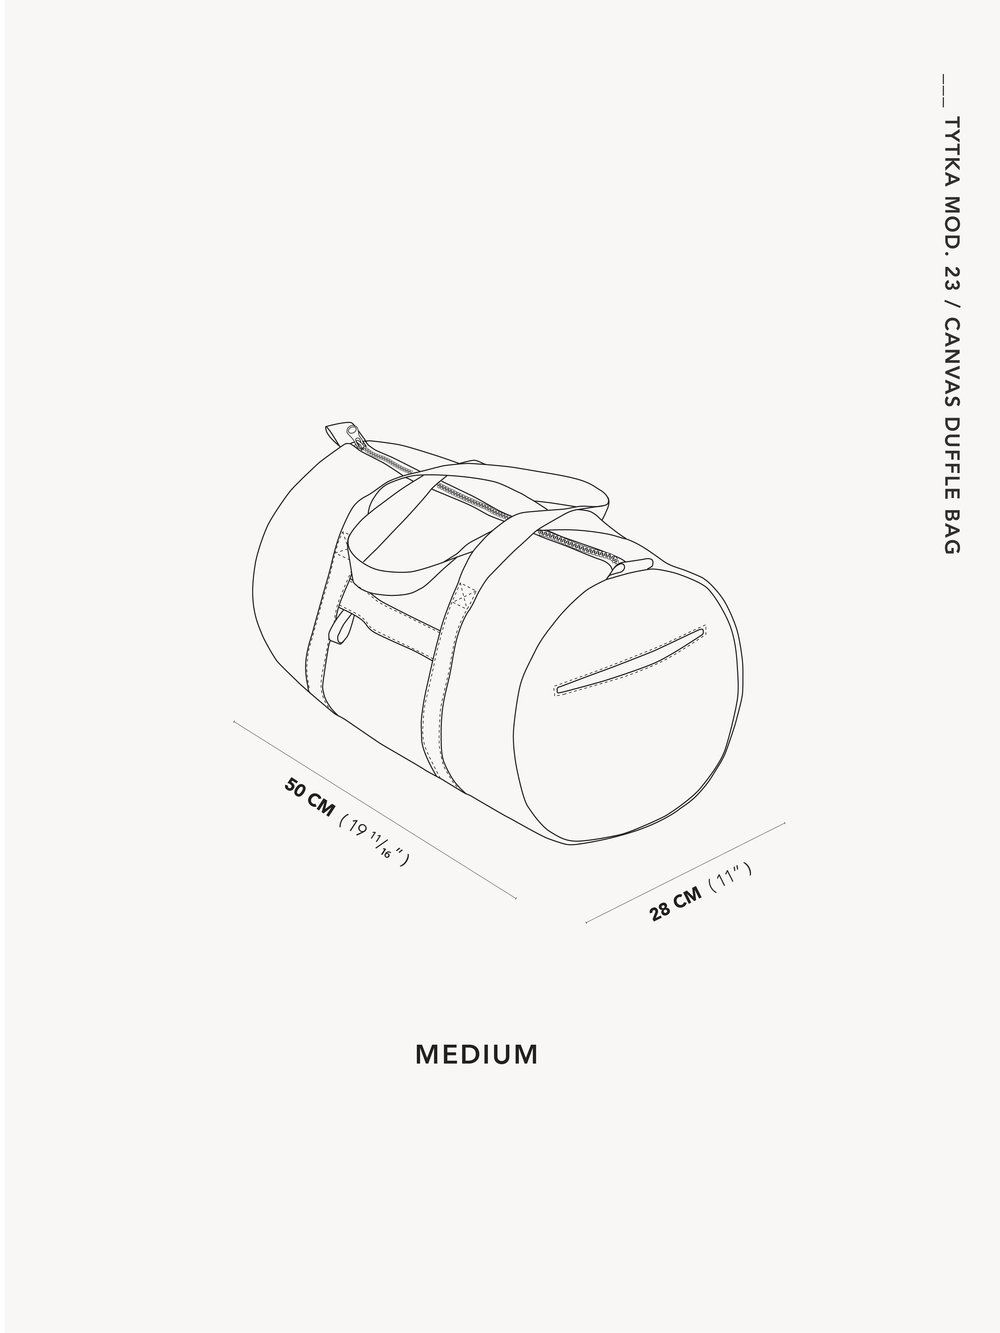 Travel Duffle Bag 2.1 Project Kit - CANVAS – SewBatik